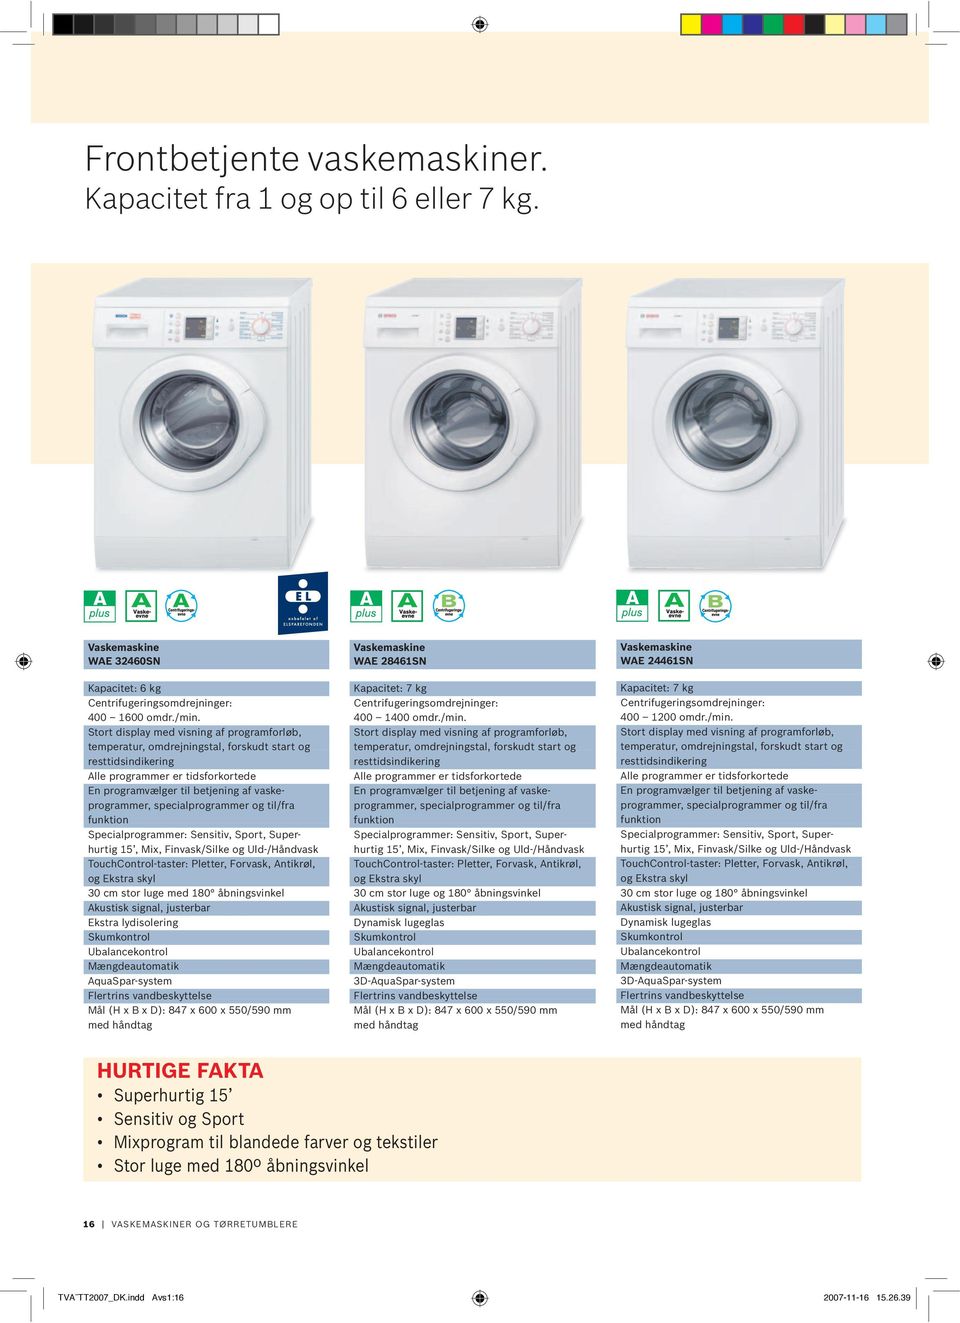 Vaskemaskiner og tørretumblere - PDF Gratis download